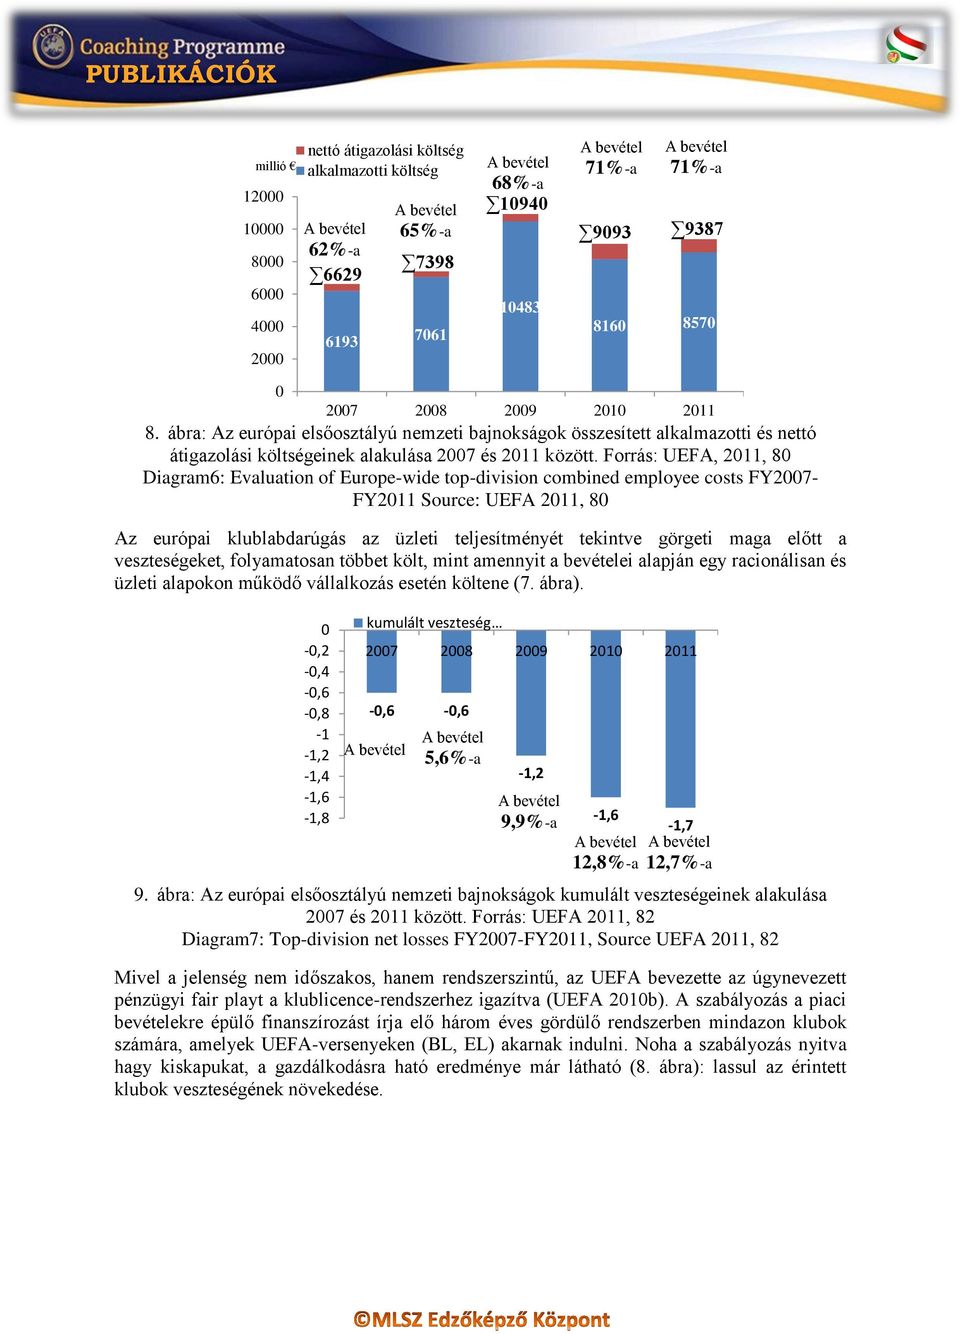 Forrás: UEFA, 2011, 80 Diagram6: Evaluation of Europe-wide top-division combined employee costs FY2007- FY2011 Source: UEFA 2011, 80 Az európai klublabdarúgás az üzleti teljesítményét tekintve